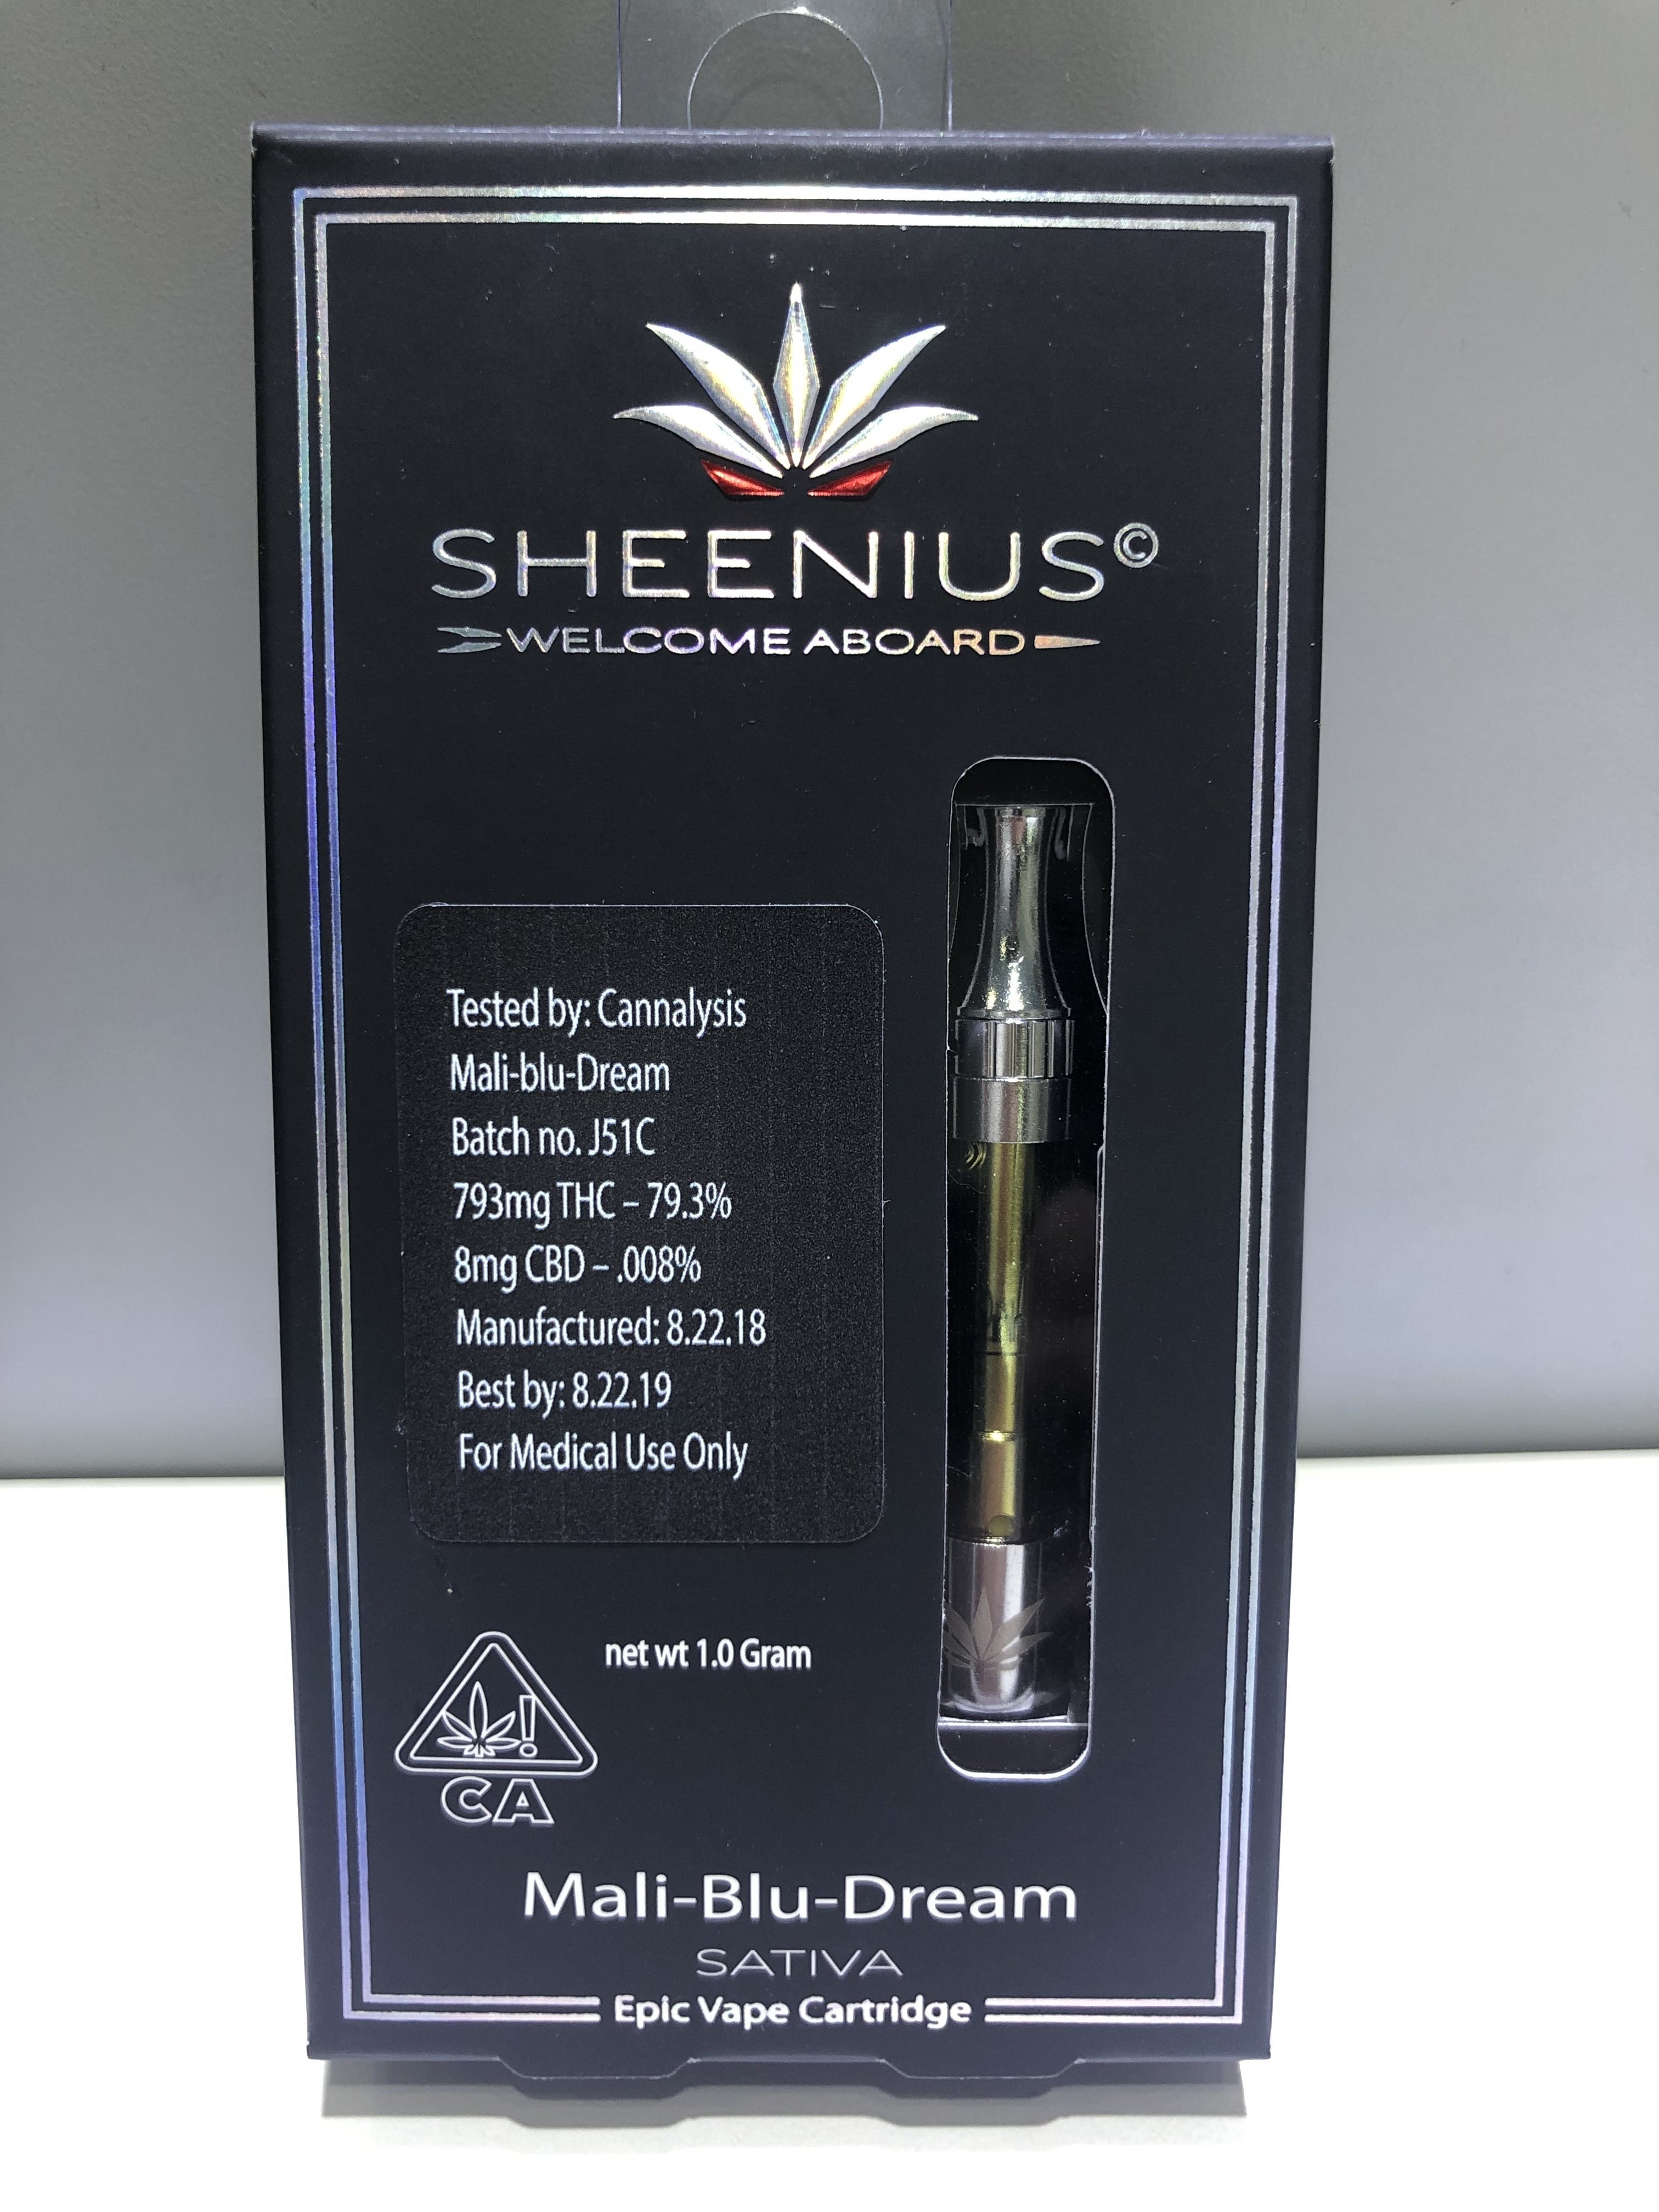 marijuana-dispensaries-5815-maywood-ave-maywood-sheenius-cartridge-mali-blu-dream